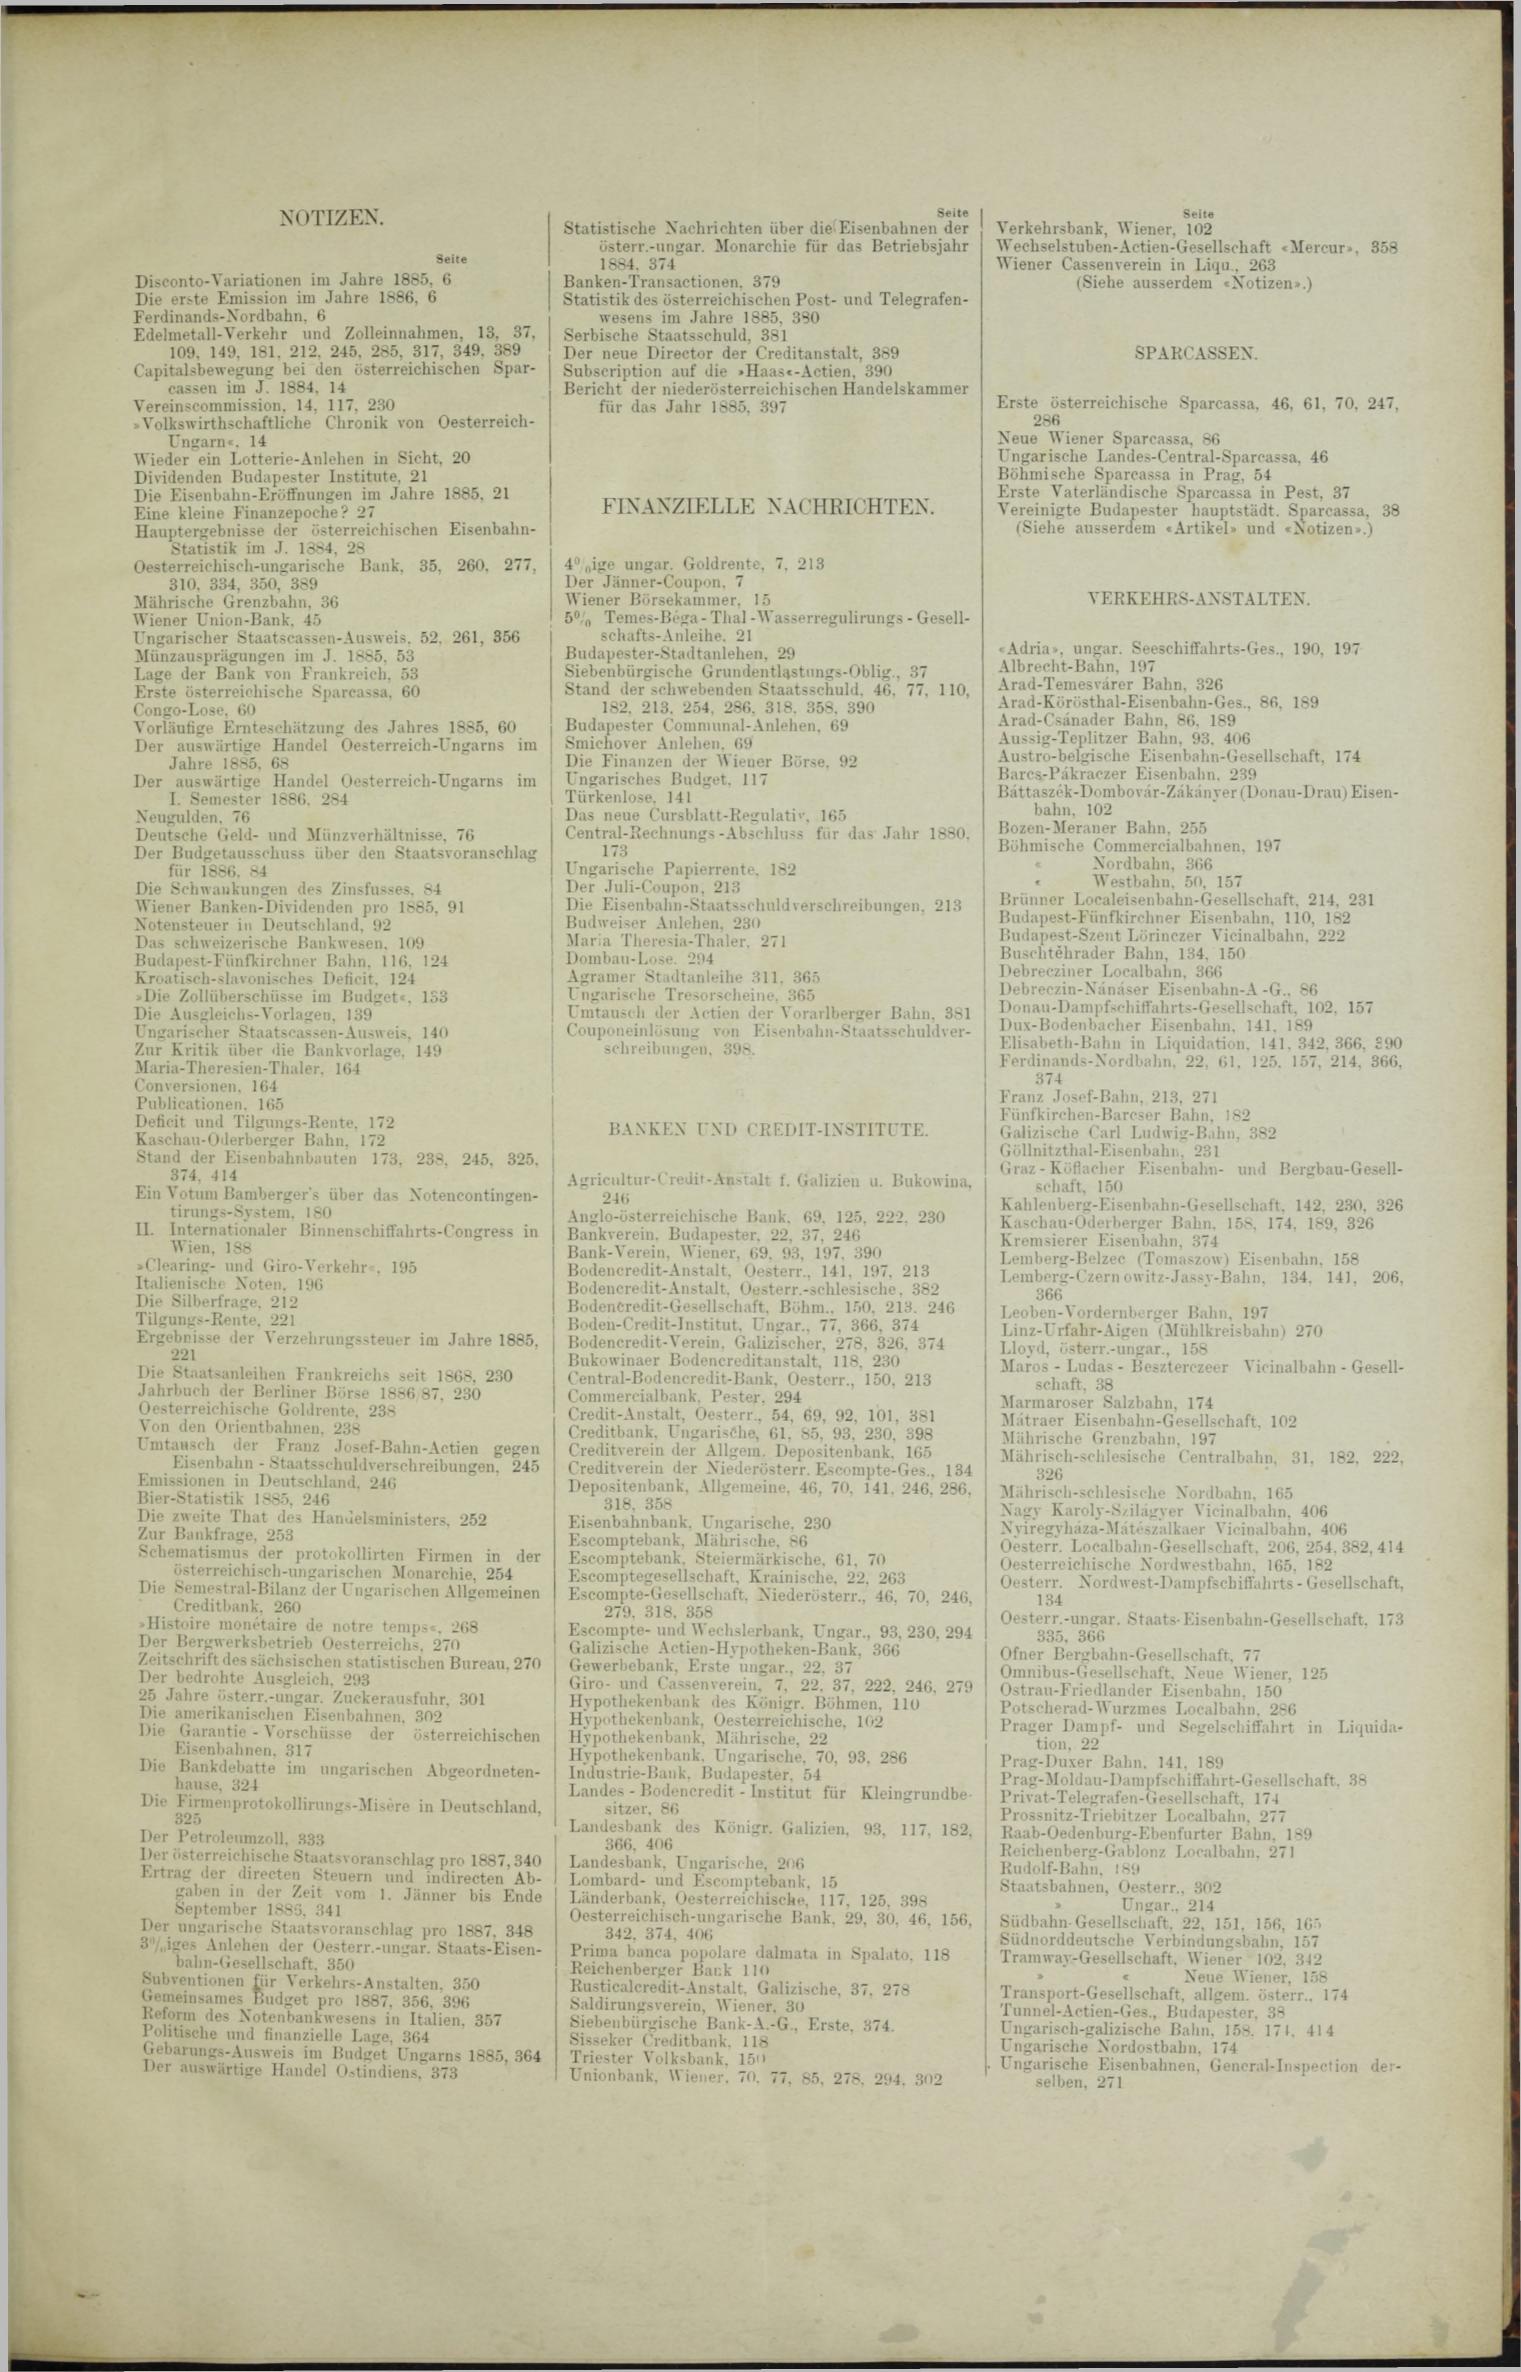 Der Tresor 30.12.1886 - Seite 11